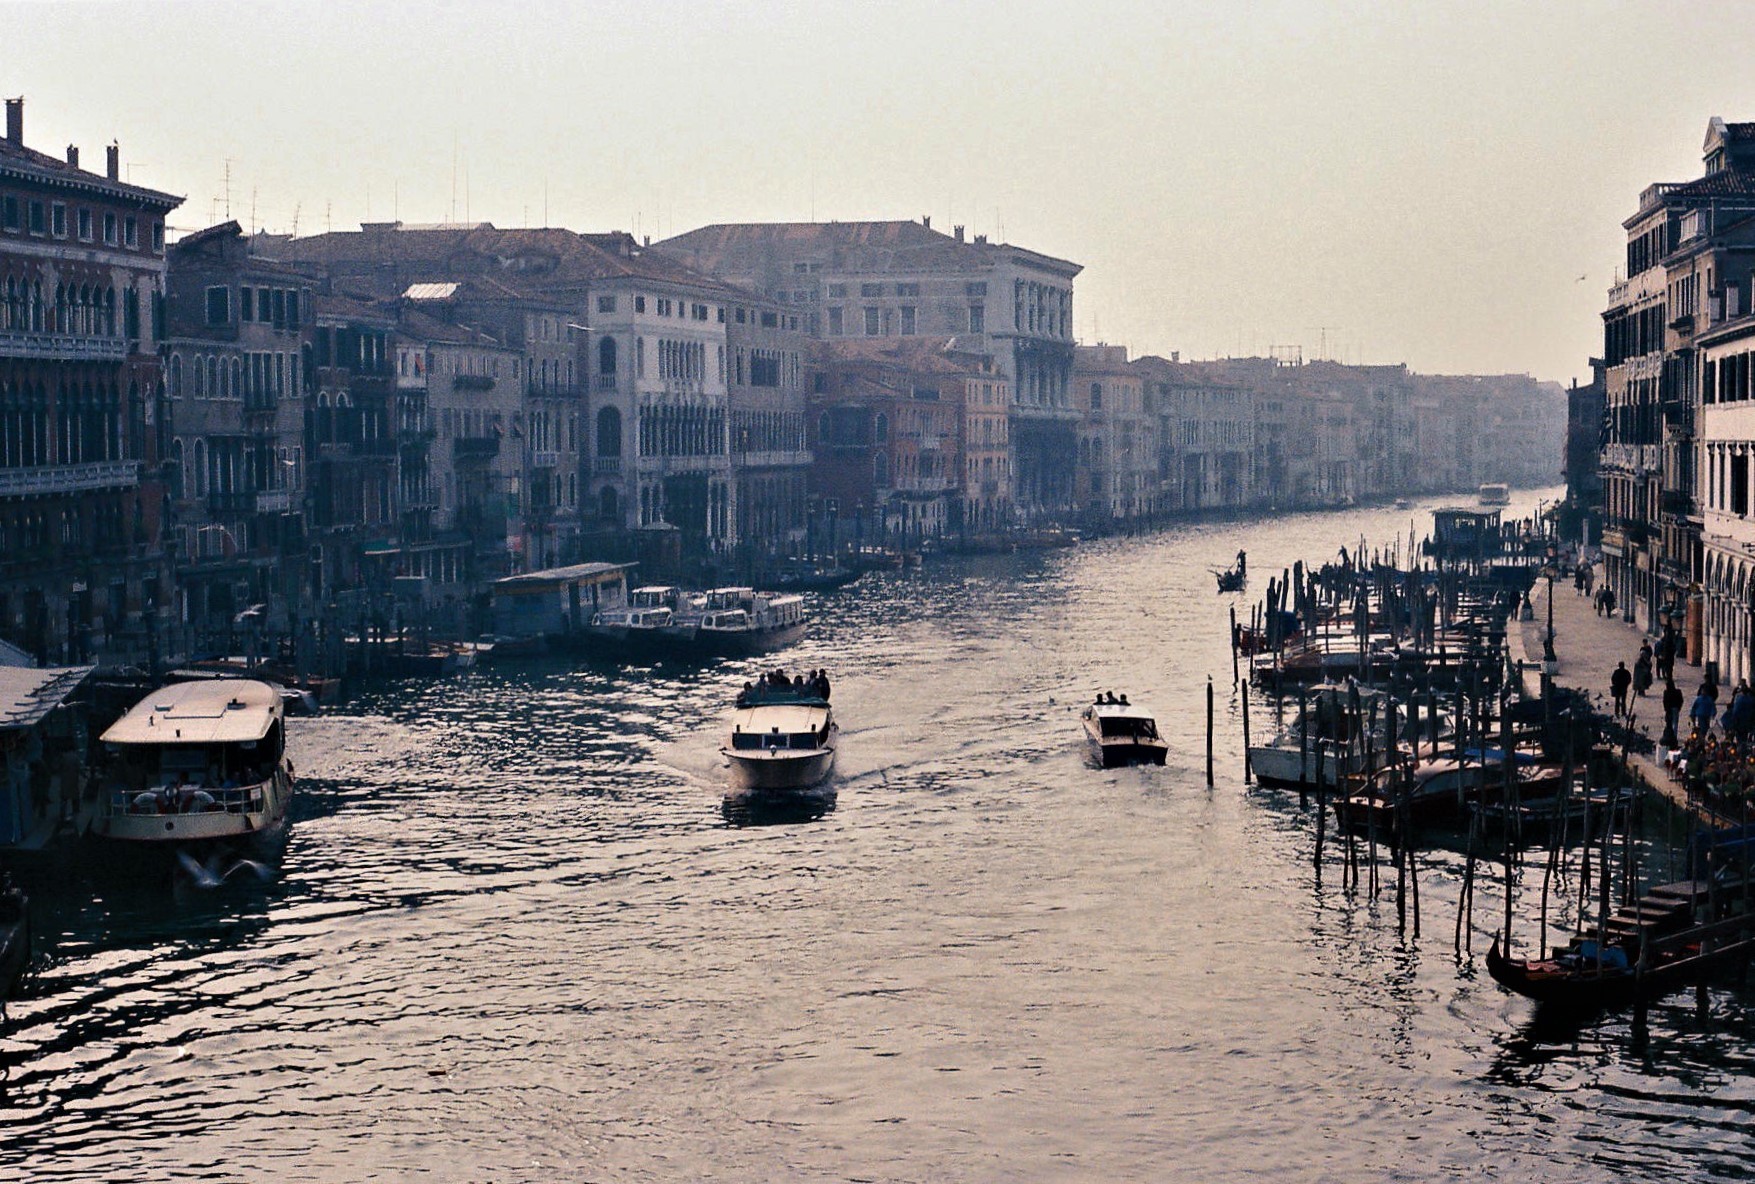  Benátky - Grand Canal, Nedeľa, 9. novembra 1986 